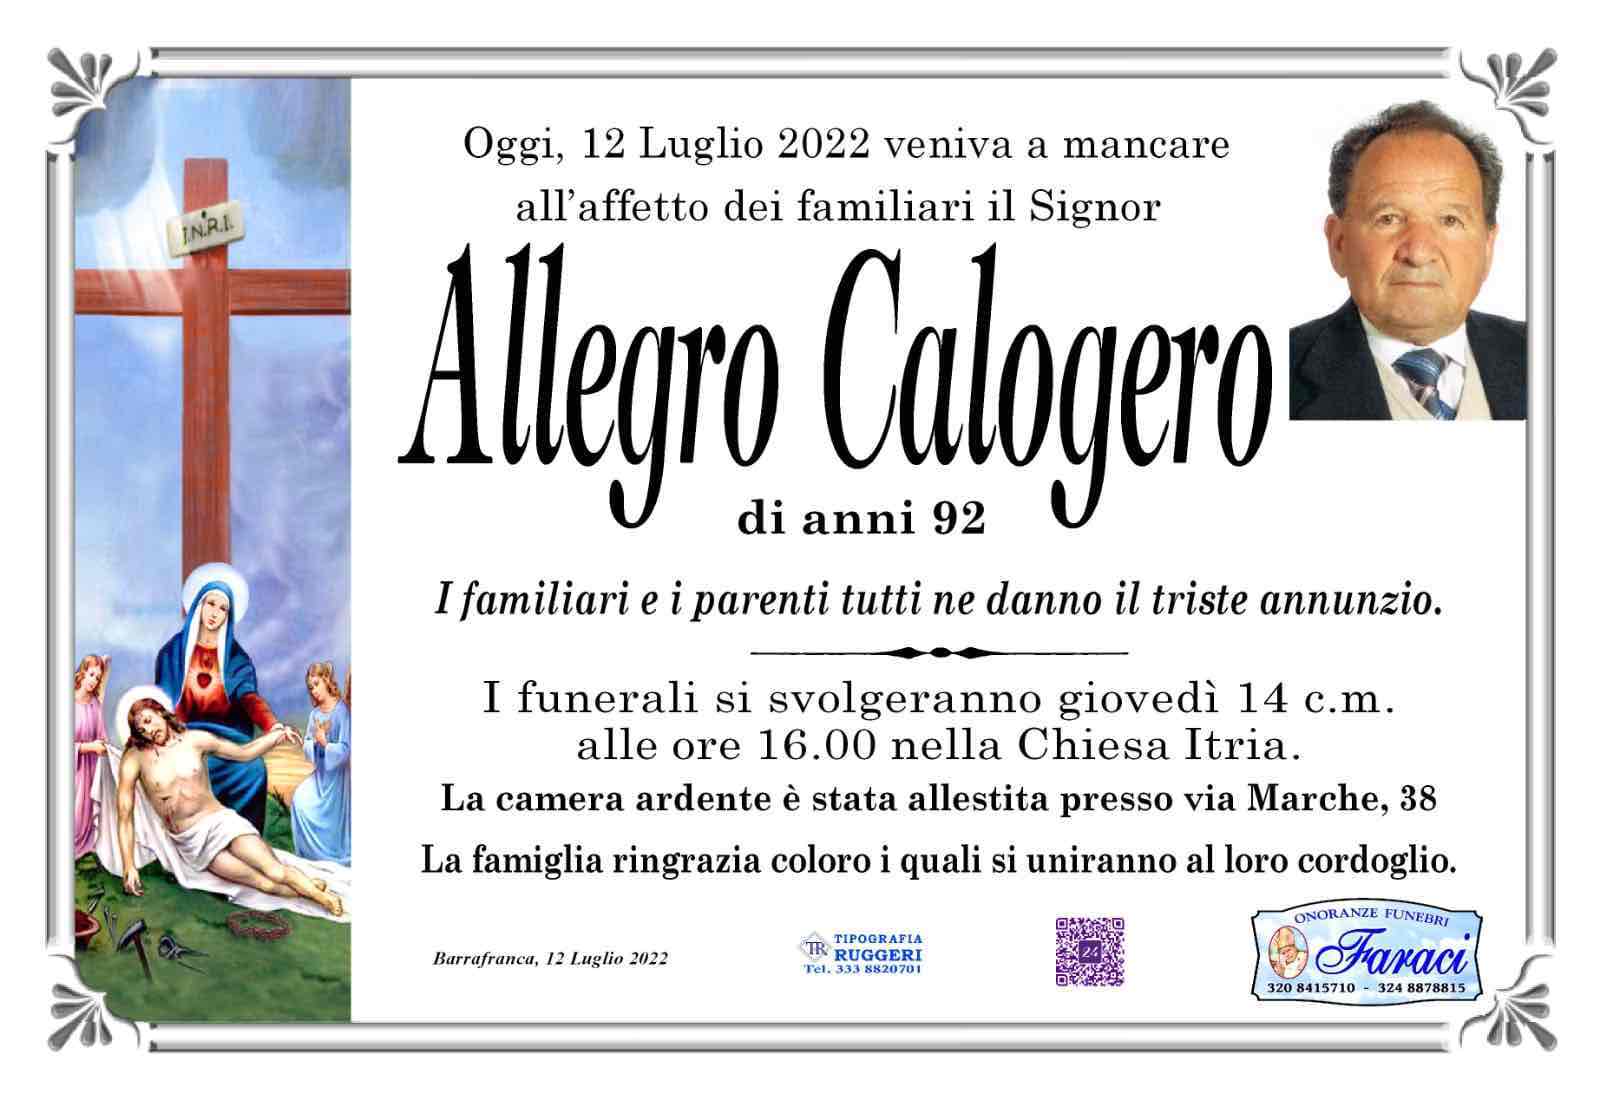 Calogero Allegro